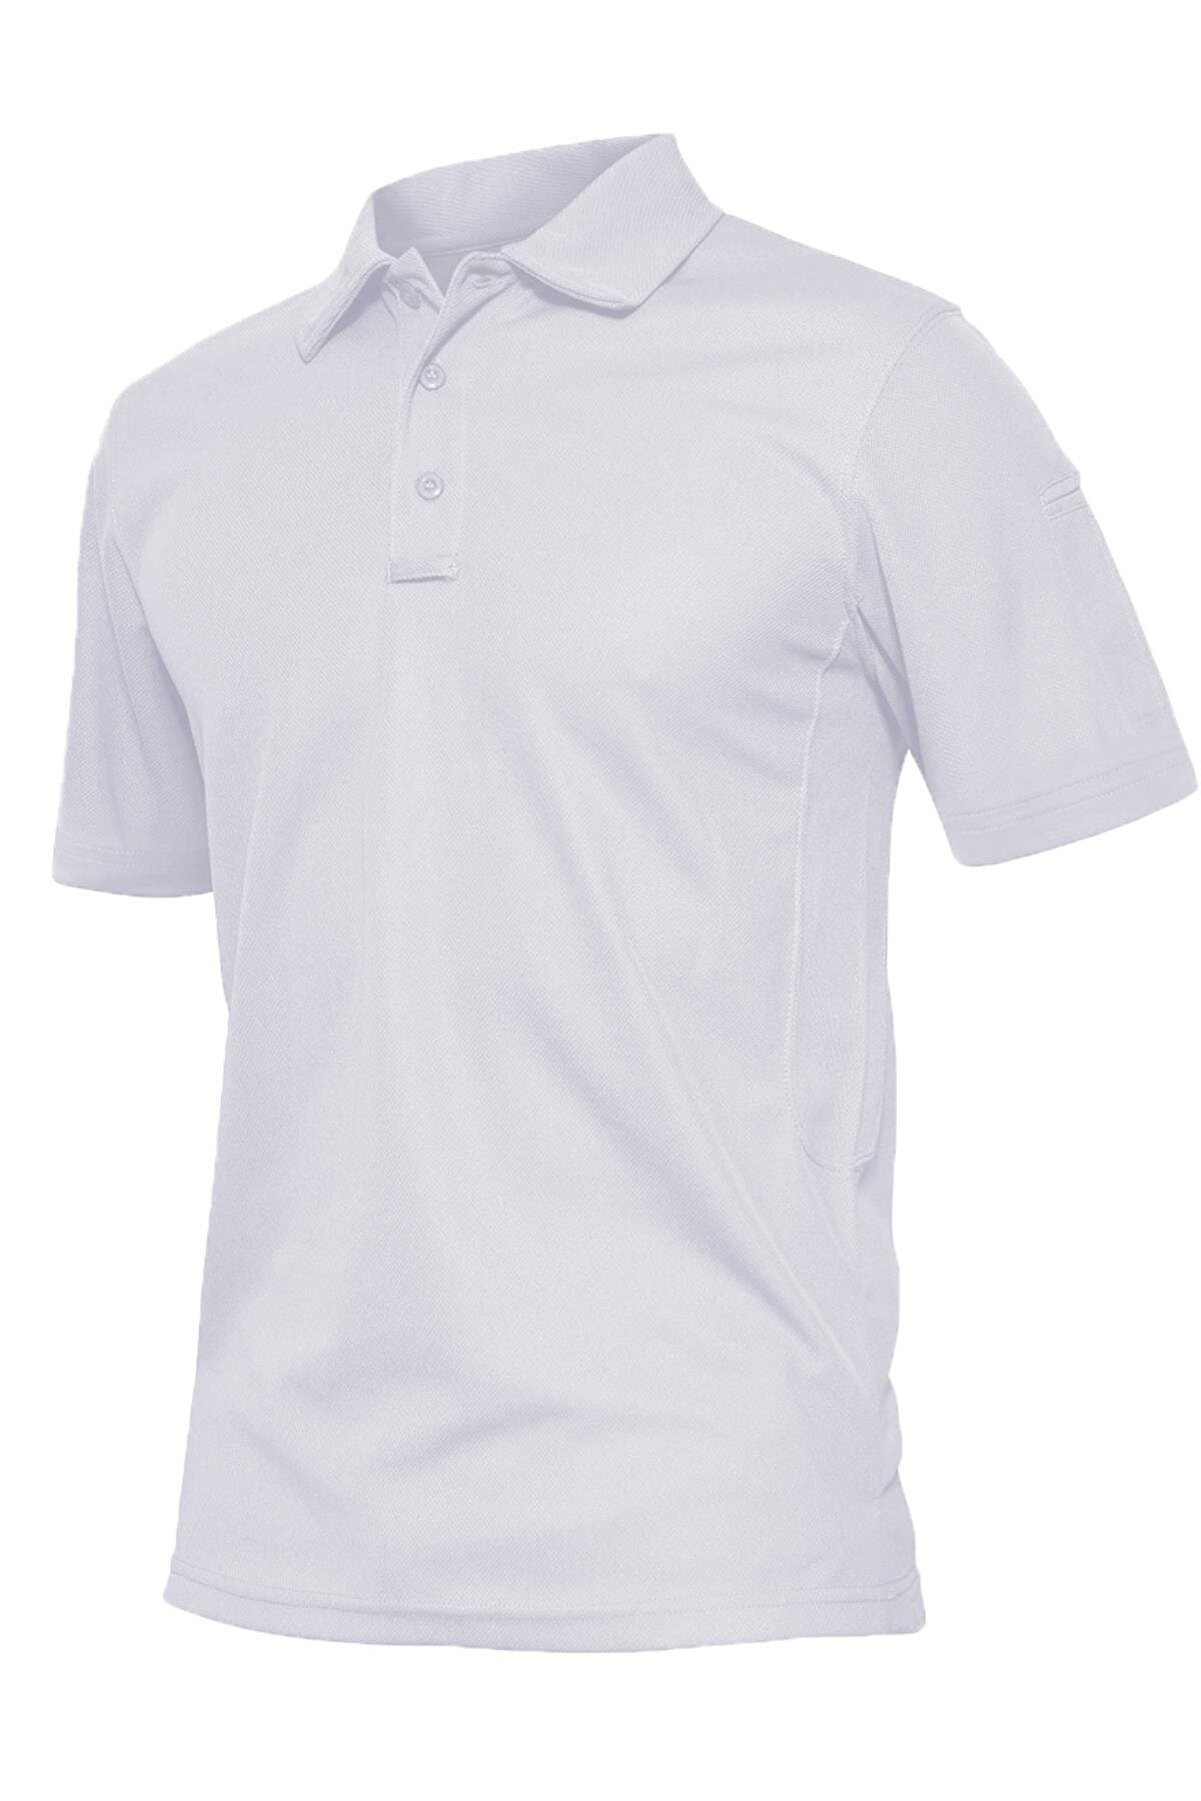 Ghassy Co. Erkek Taktik Polo Yaka Gömlek Hızlı Kuruma Nem Emici Performans Pique Jersey Golf T-shirt - BEYAZ